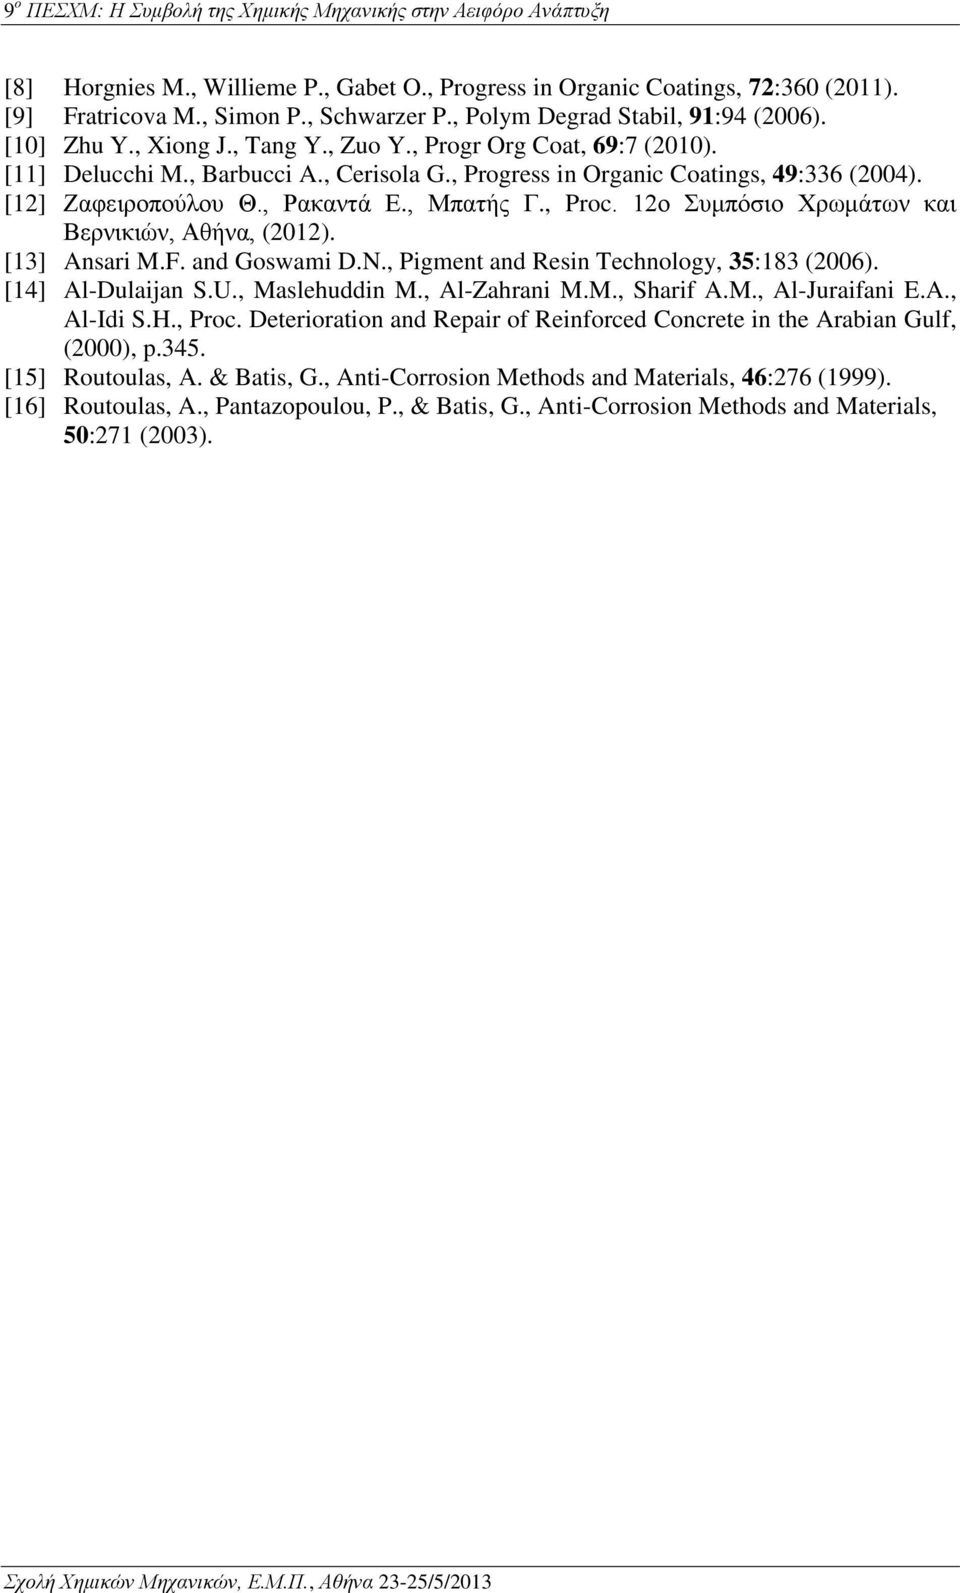 12ο Συμπόσιο Χρωμάτων και Βερνικιών, Αθήνα, (2012). [13] Ansari M.F. and Goswami D.N., Pigment and Resin Technology, 35:183 (2006). [14] Al-Dulaijan S.U., Maslehuddin M., Al-Zahrani M.M., Sharif A.M., Al-Juraifani E.